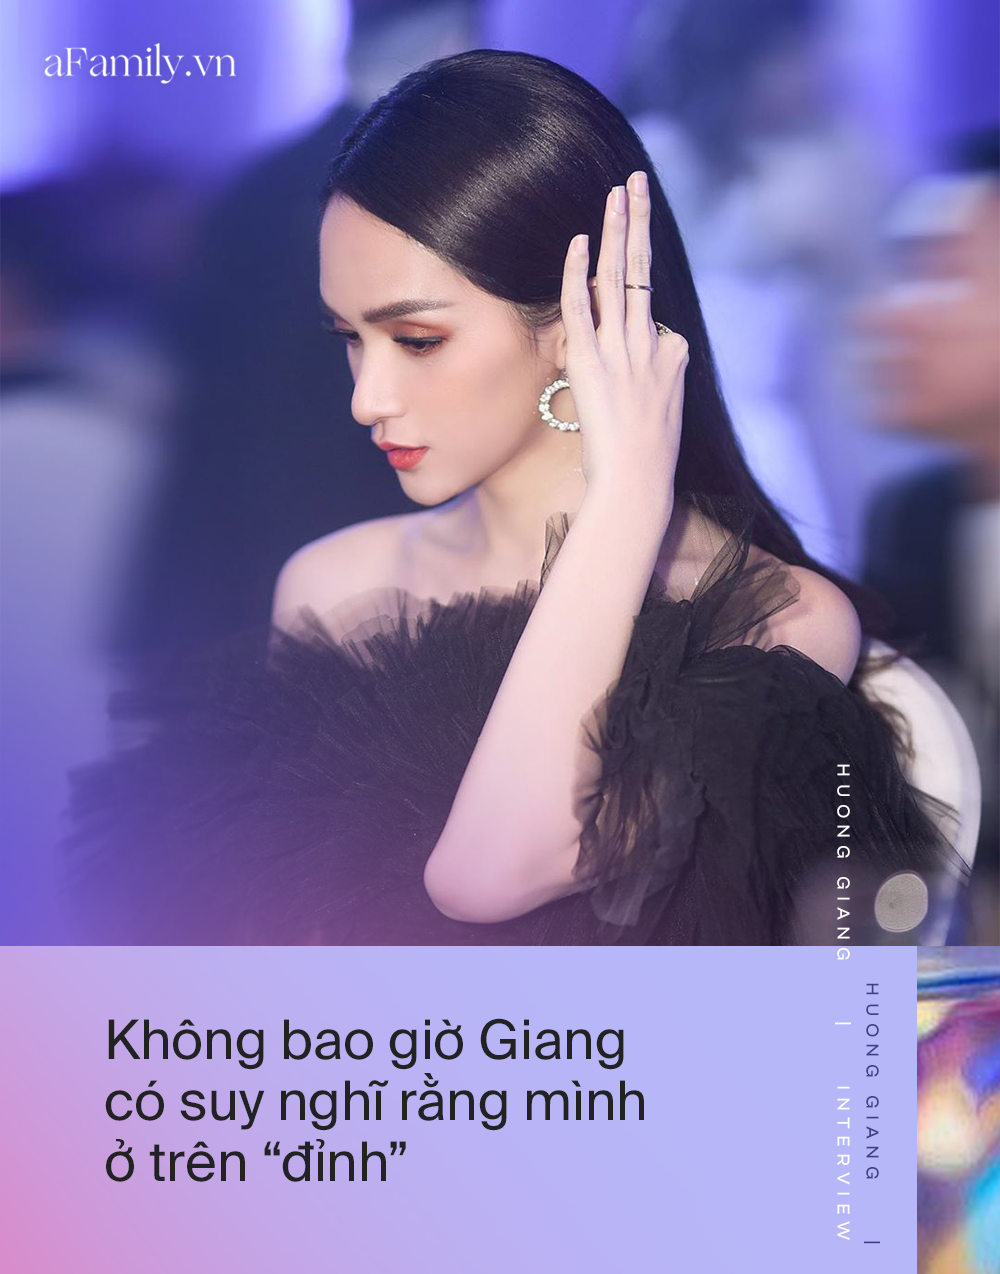 Hoa hậu Hương Giang: Tôi làm gì cho cộng đồng LGBT không cần ai ghi nhận, chia sẻ mấu chốt để "come out" được chấp nhận là sự thành công - Ảnh 3.